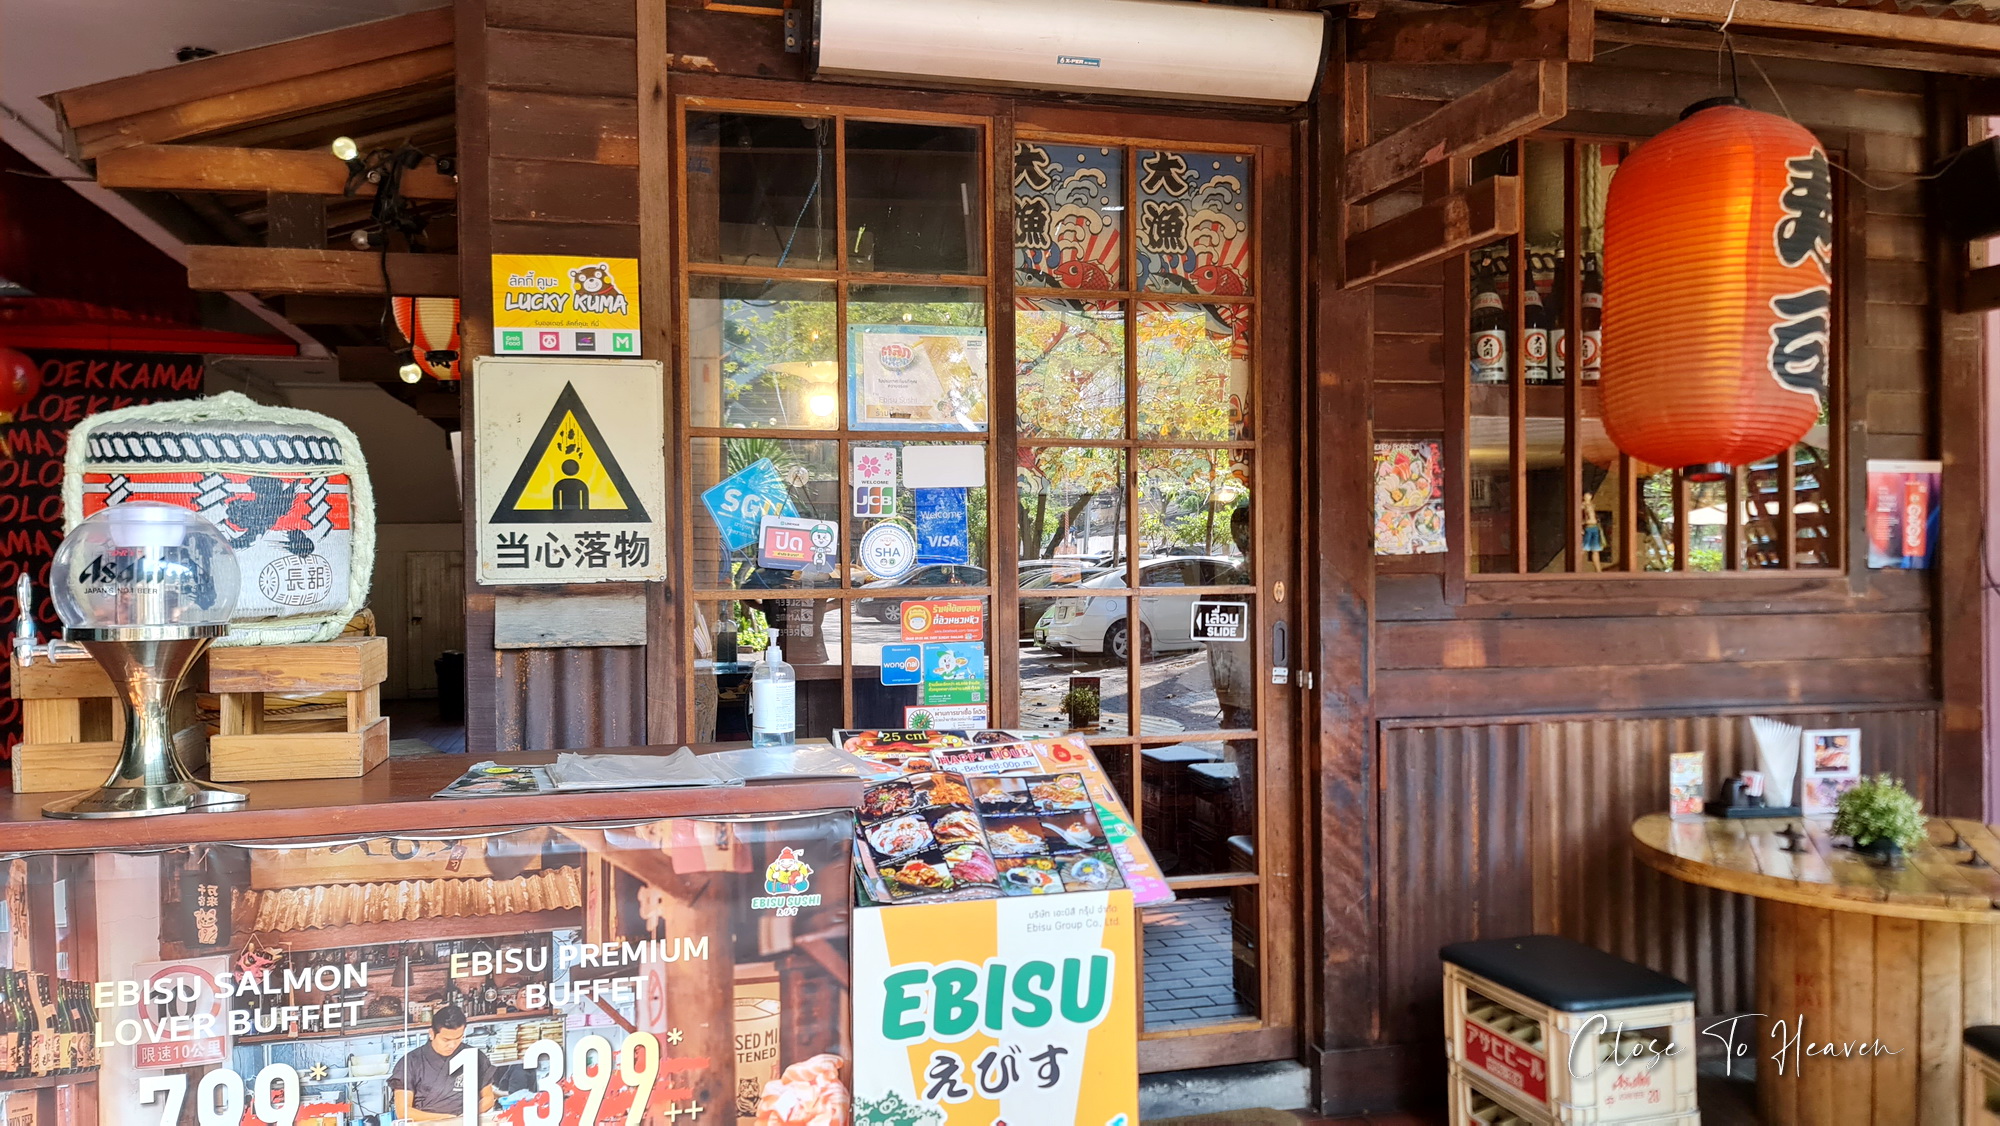 บุฟเฟ่ต์อาหารญี่ปุ่น Ebisu Sushi